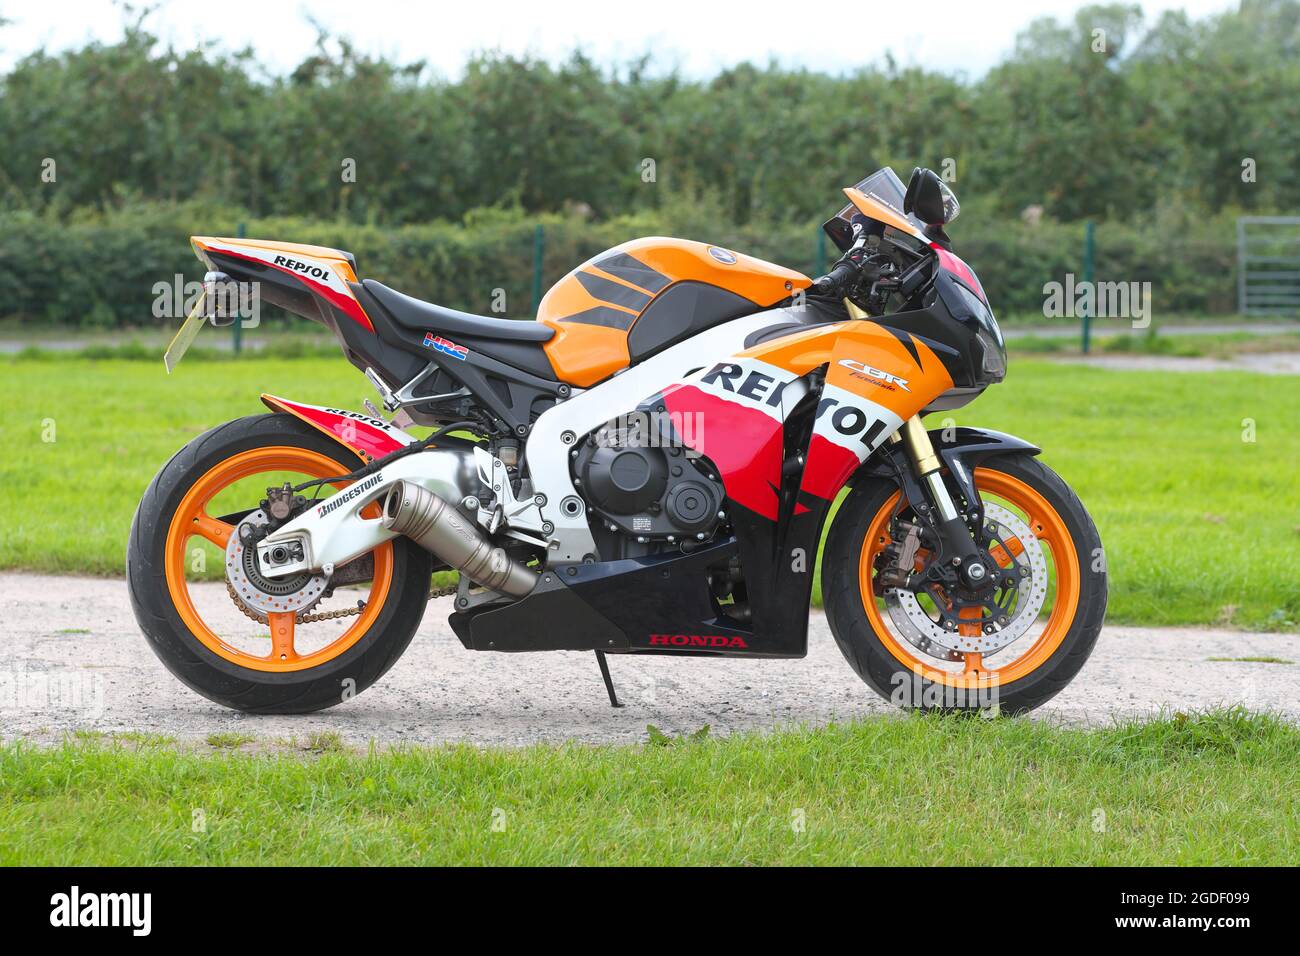 Honda CBR 1000 RR Fireblade Respol replica motorbike Stock Photo - Alamy